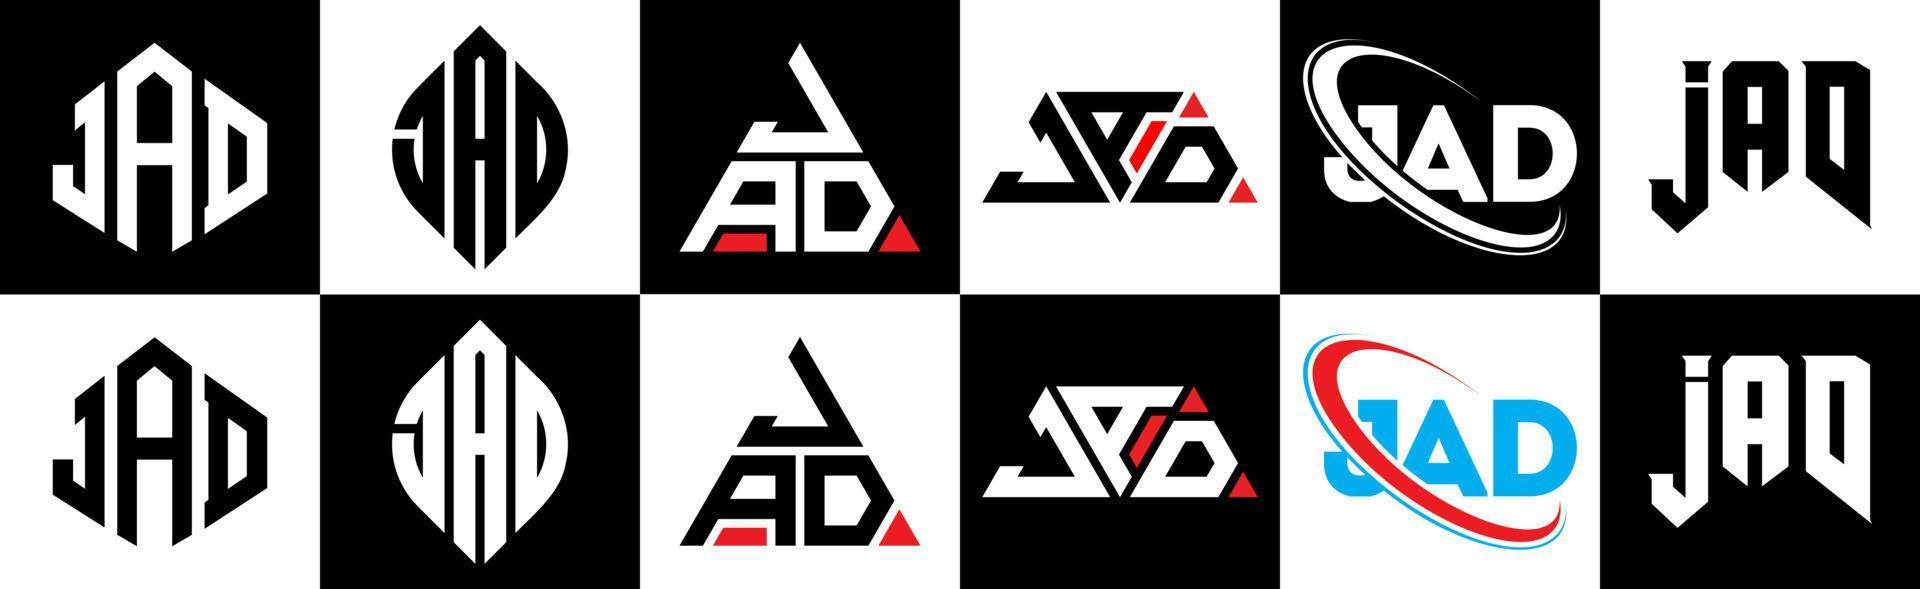 Jad-Buchstaben-Logo-Design in sechs Stilen. Jad-Polygon, Kreis, Dreieck, Sechseck, flacher und einfacher Stil mit schwarz-weißem Buchstabenlogo in einer Zeichenfläche. Jad minimalistisches und klassisches Logo vektor